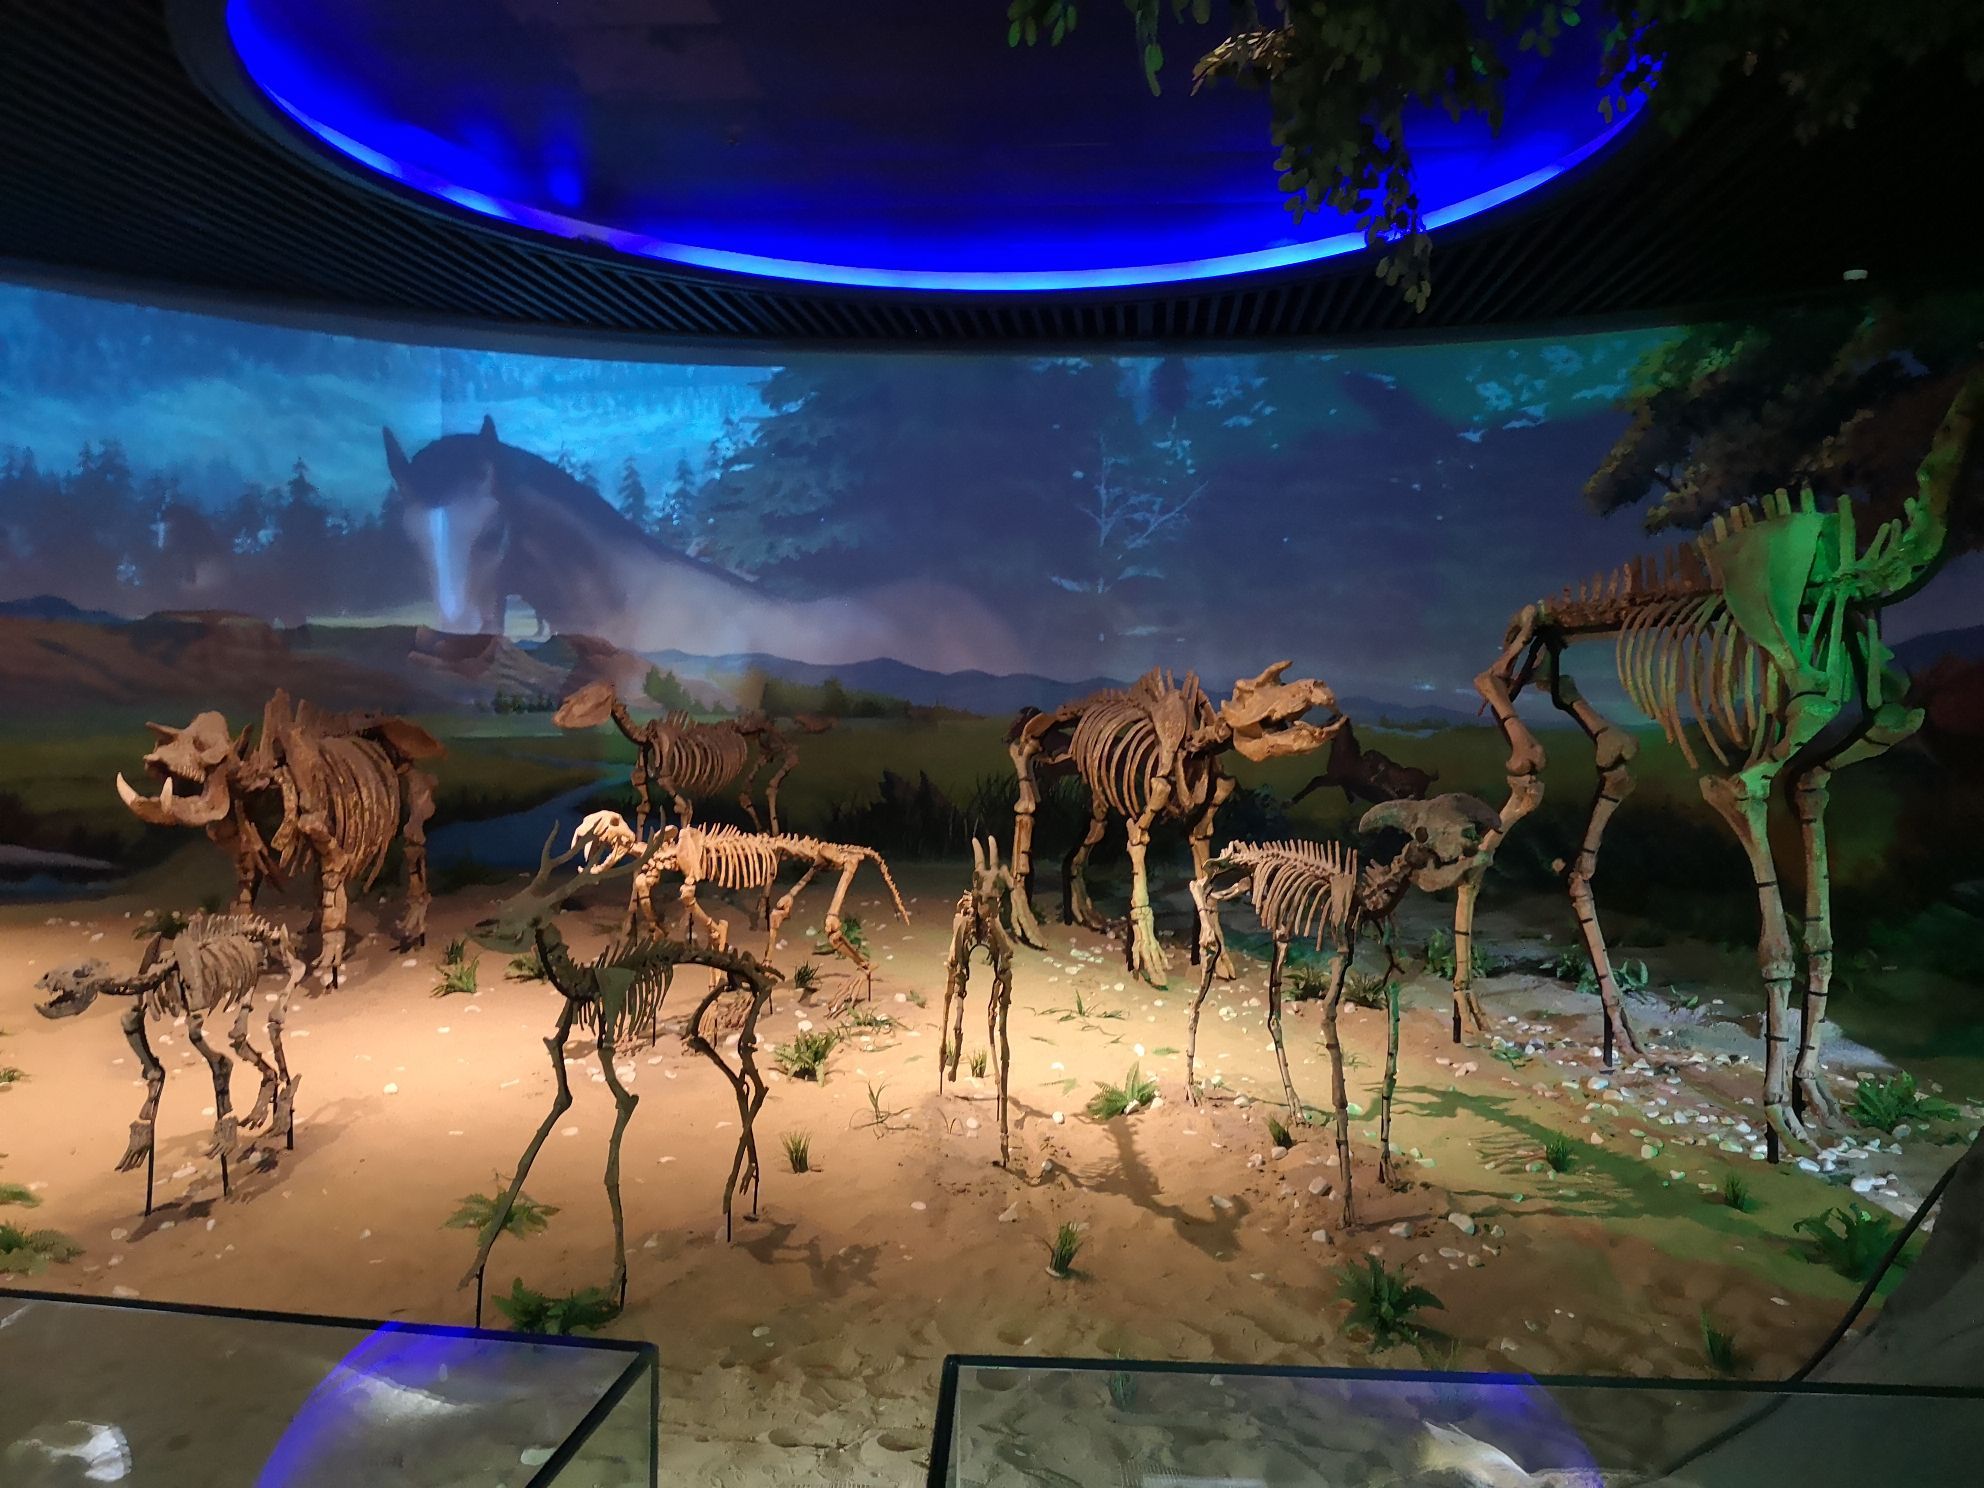 2022安徽省地质博物馆游玩攻略,馆内地质,环境,动物,植物